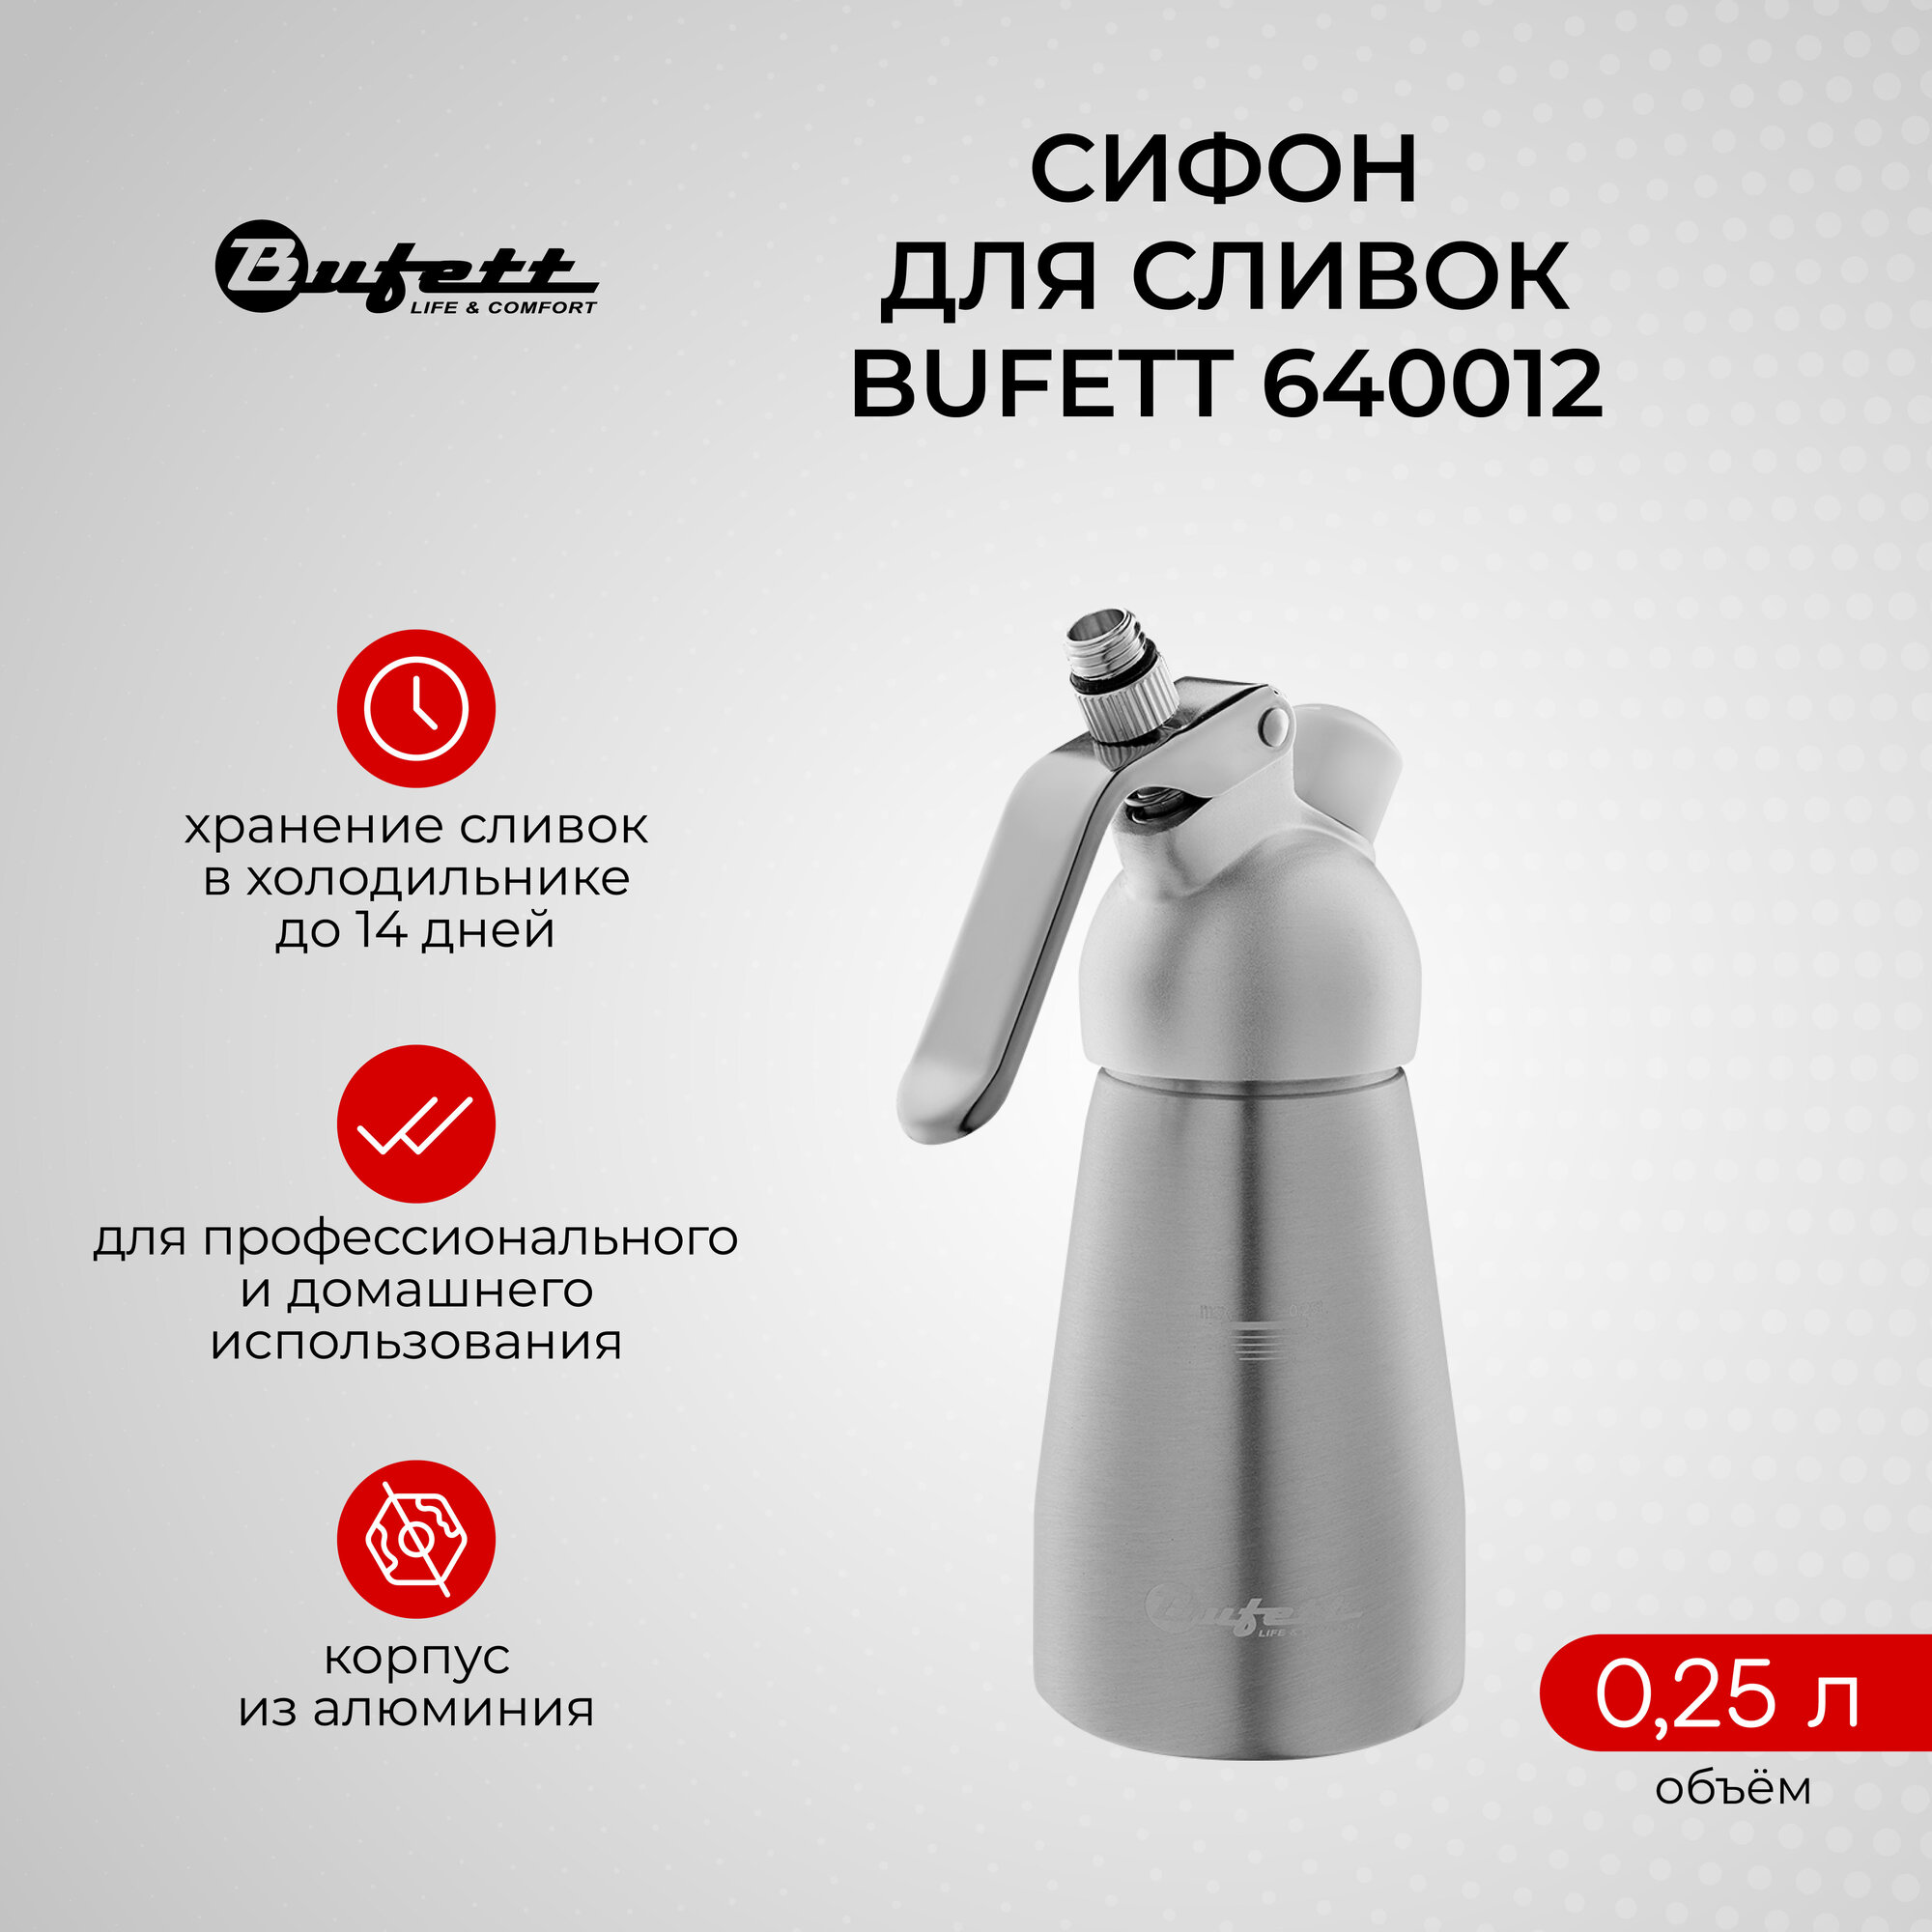 Кулинарный кремер-сифон для сливок BUFETT 640012, серебряный, 0,25л